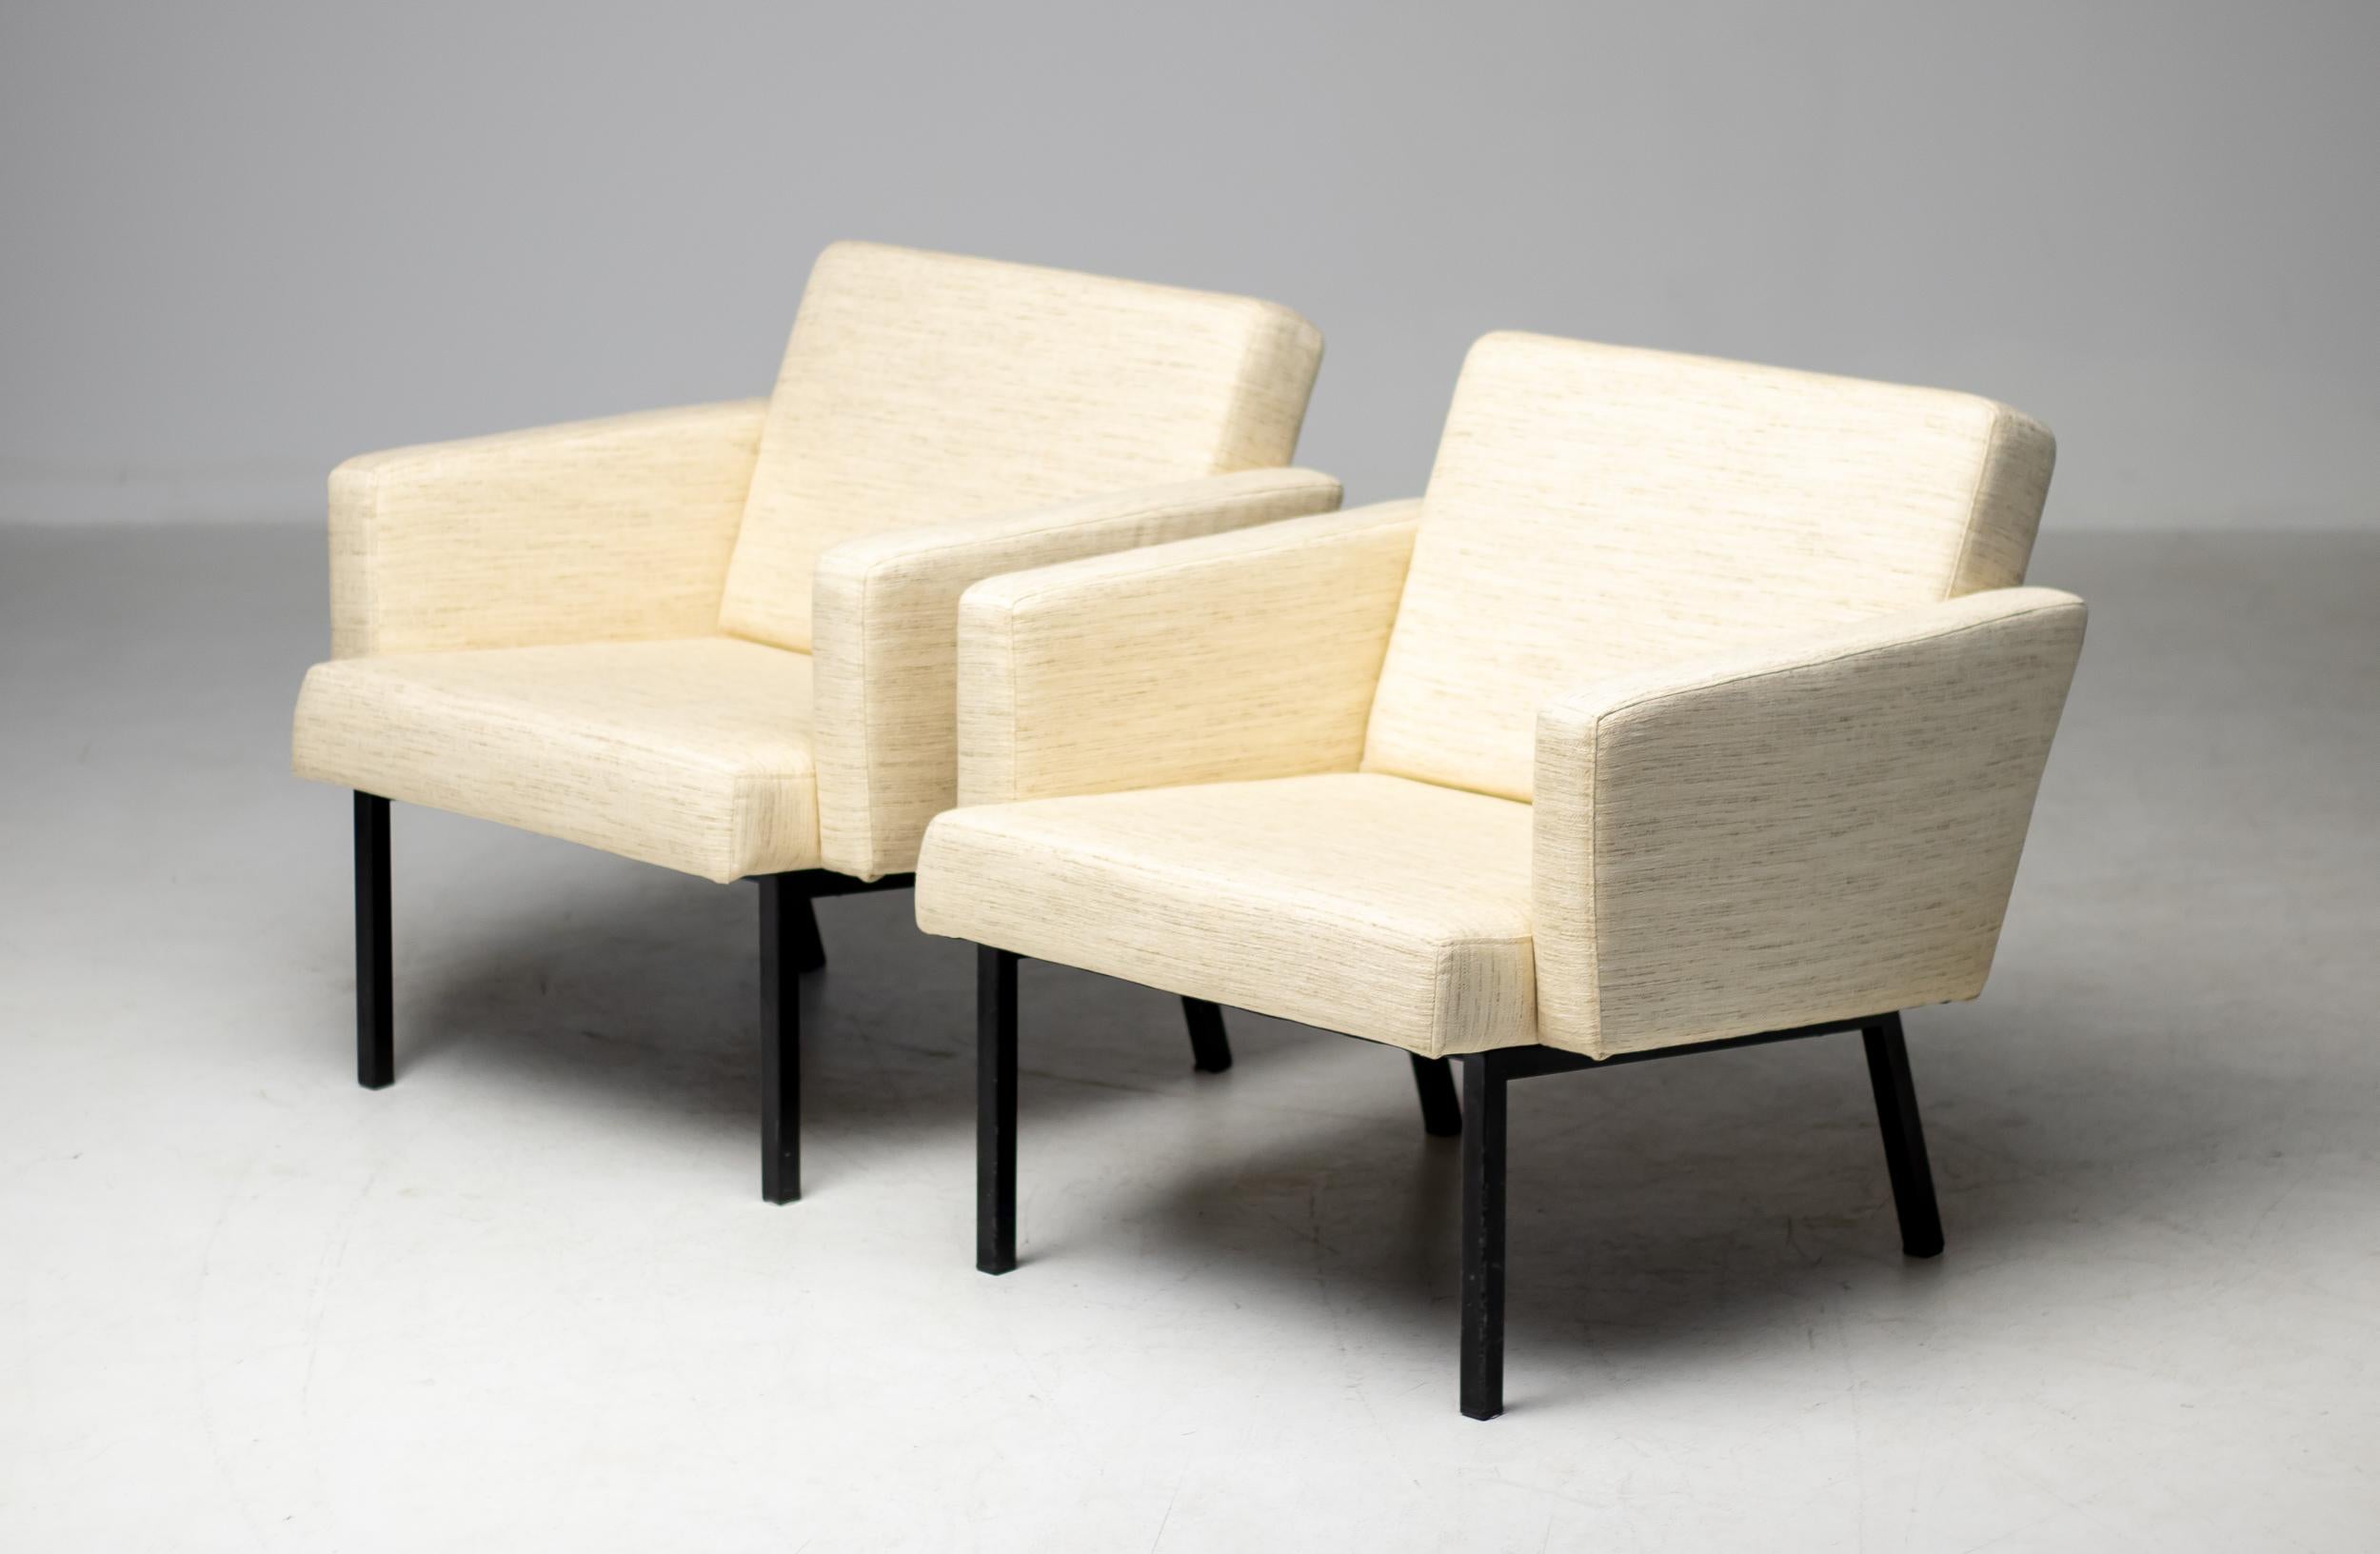 Seltene modernistische Sessel, 1964 von dem niederländischen Designer Martin Visser für 't Spectrum entworfen. 
Bei den Stühlen handelt es sich um das Modell SZ48, das in mehreren Broschüren und dem Buch 't Spectrum dokumentiert ist. 
Sie wurden nur